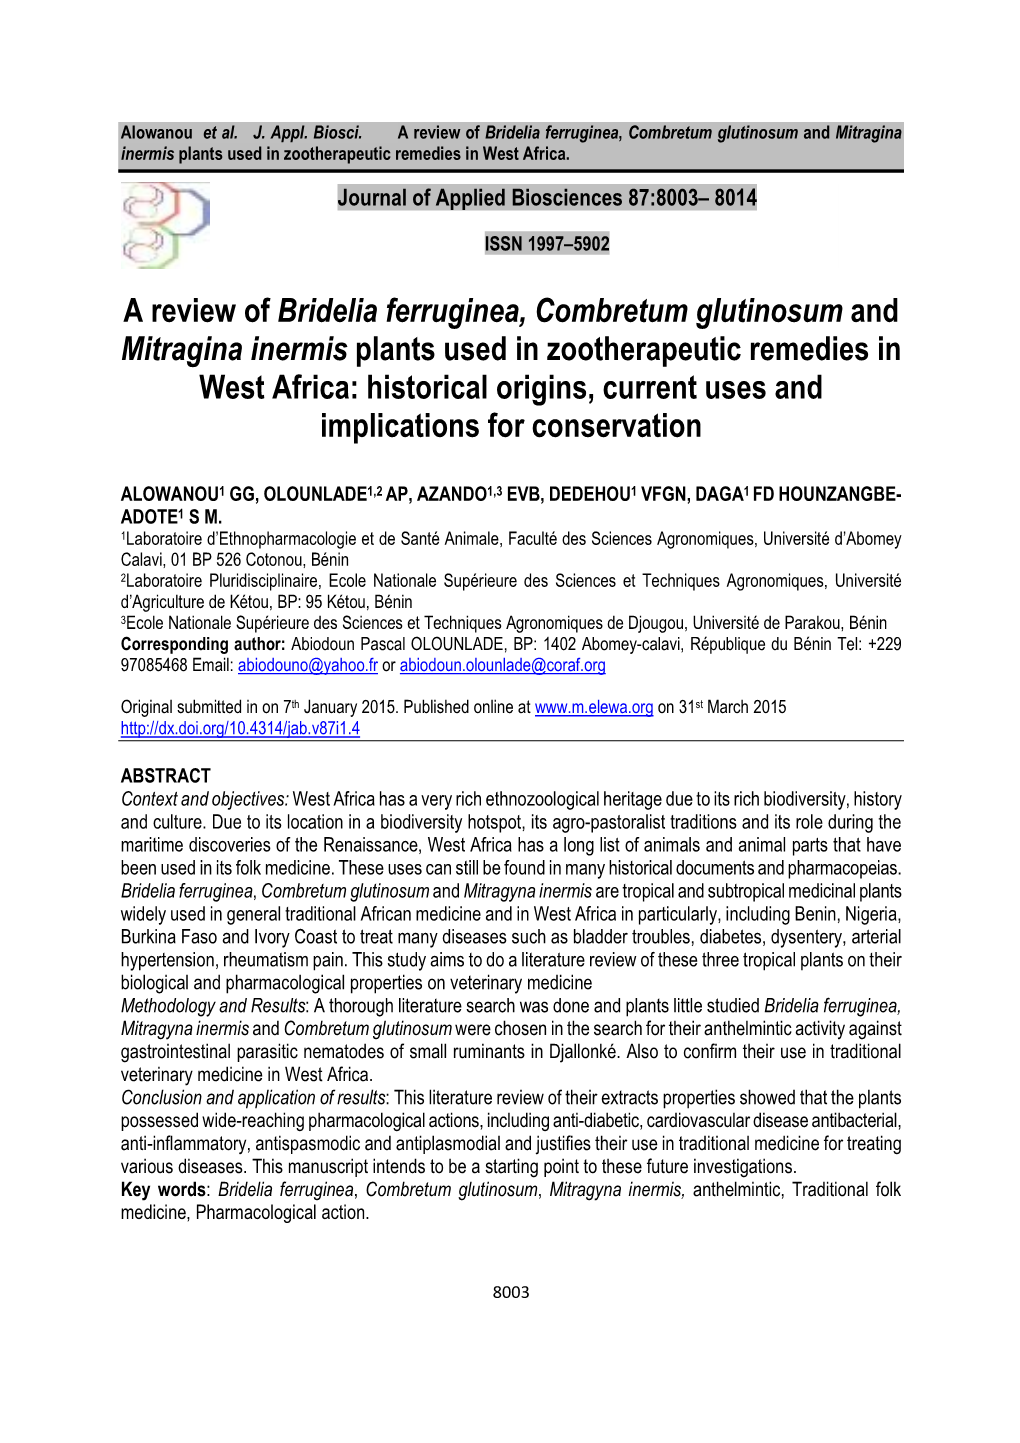 A Review of Bridelia Ferruginea, Combretum Glutinosum And